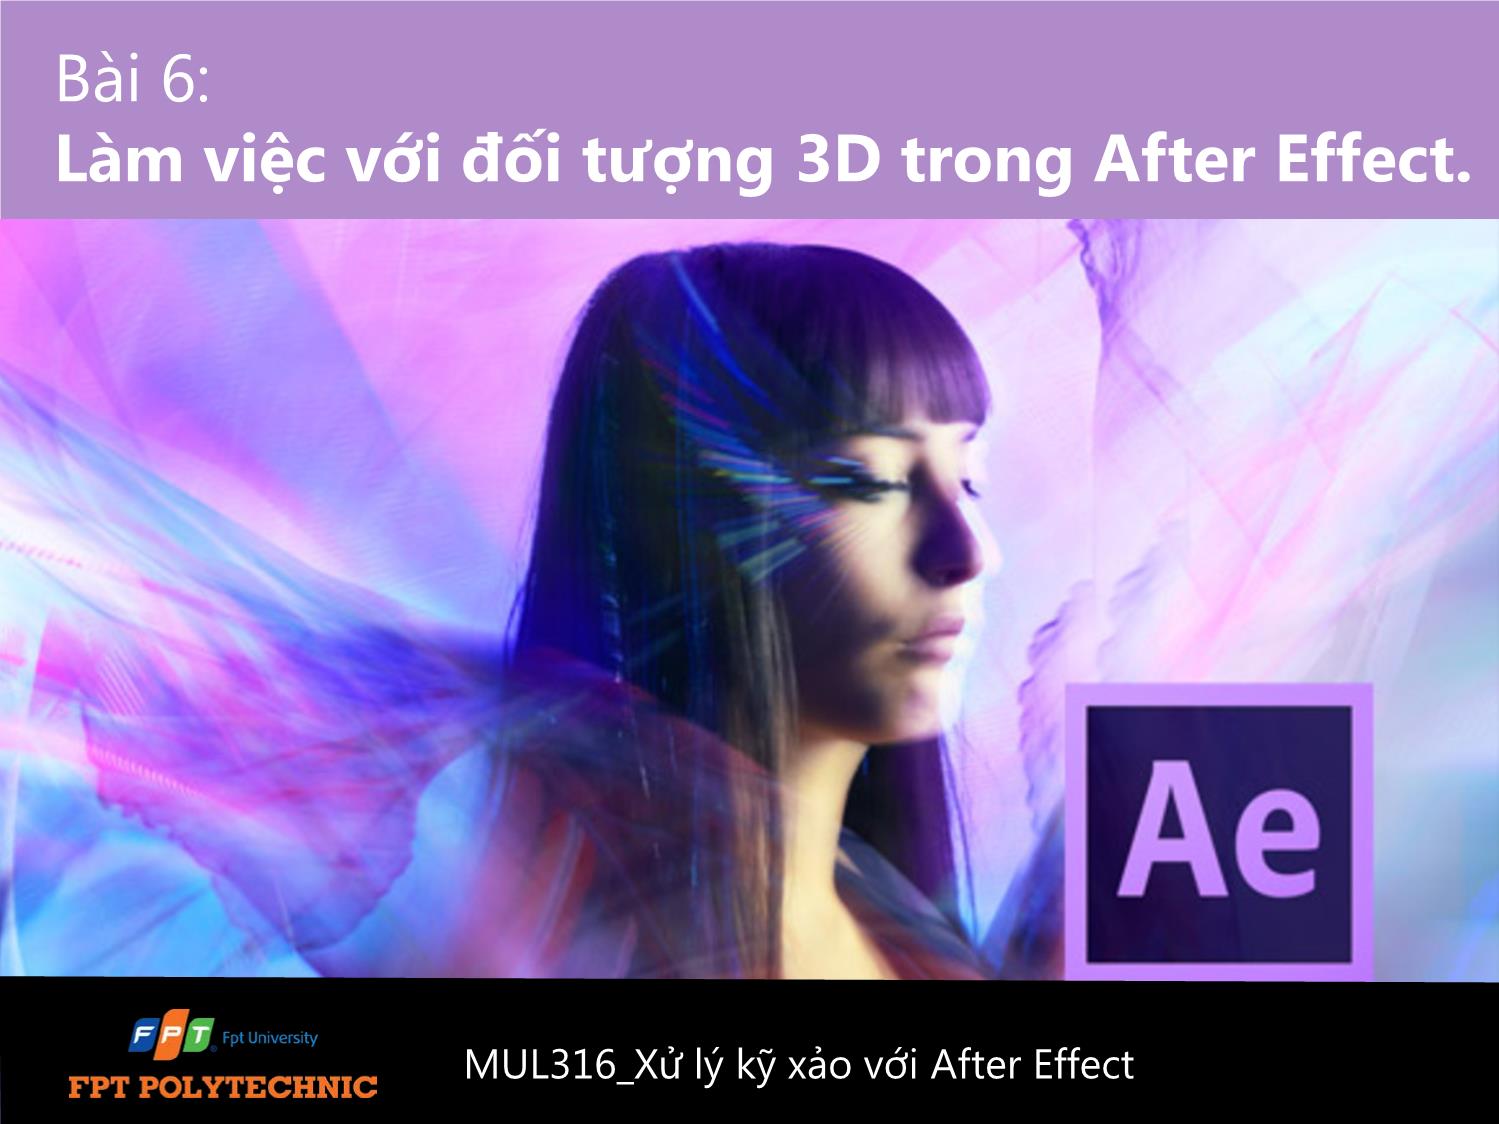 Bài giảng Xử lý kỹ xảo với After Effect Cs6 - Bài 6: Làm việc với đối tượng 3D trong After Effect trang 1